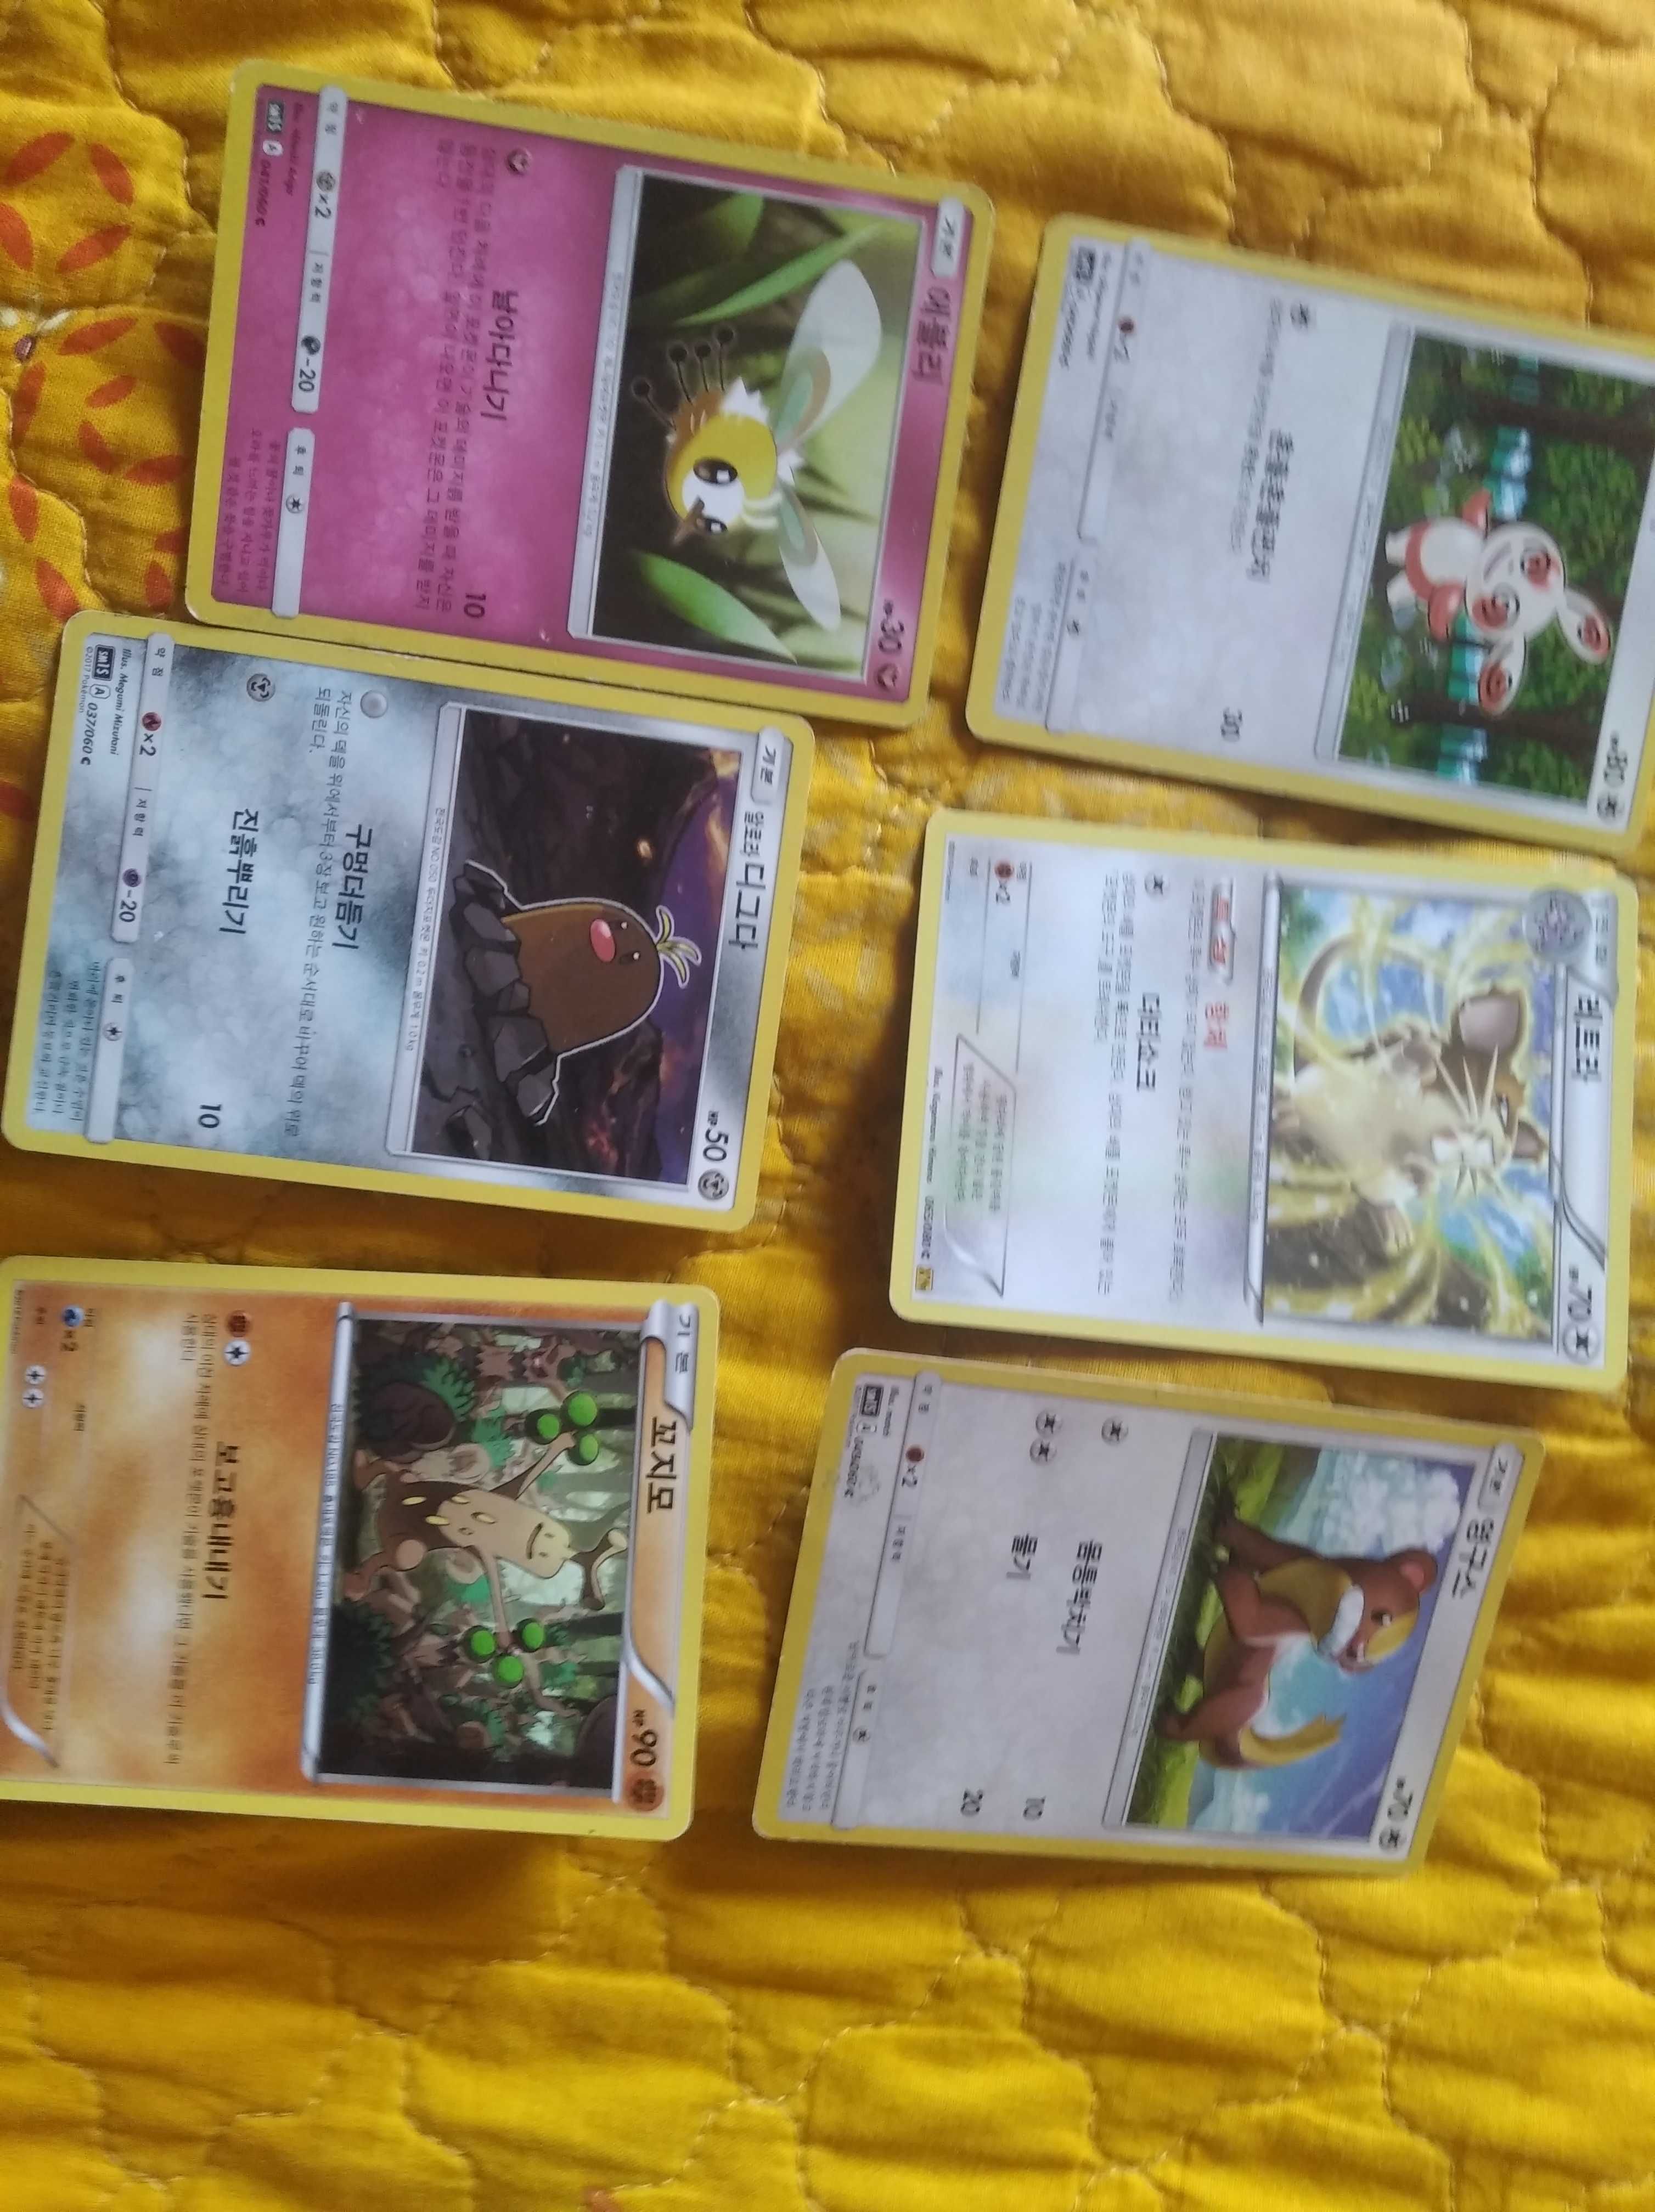 Cartas Pokémon variadas